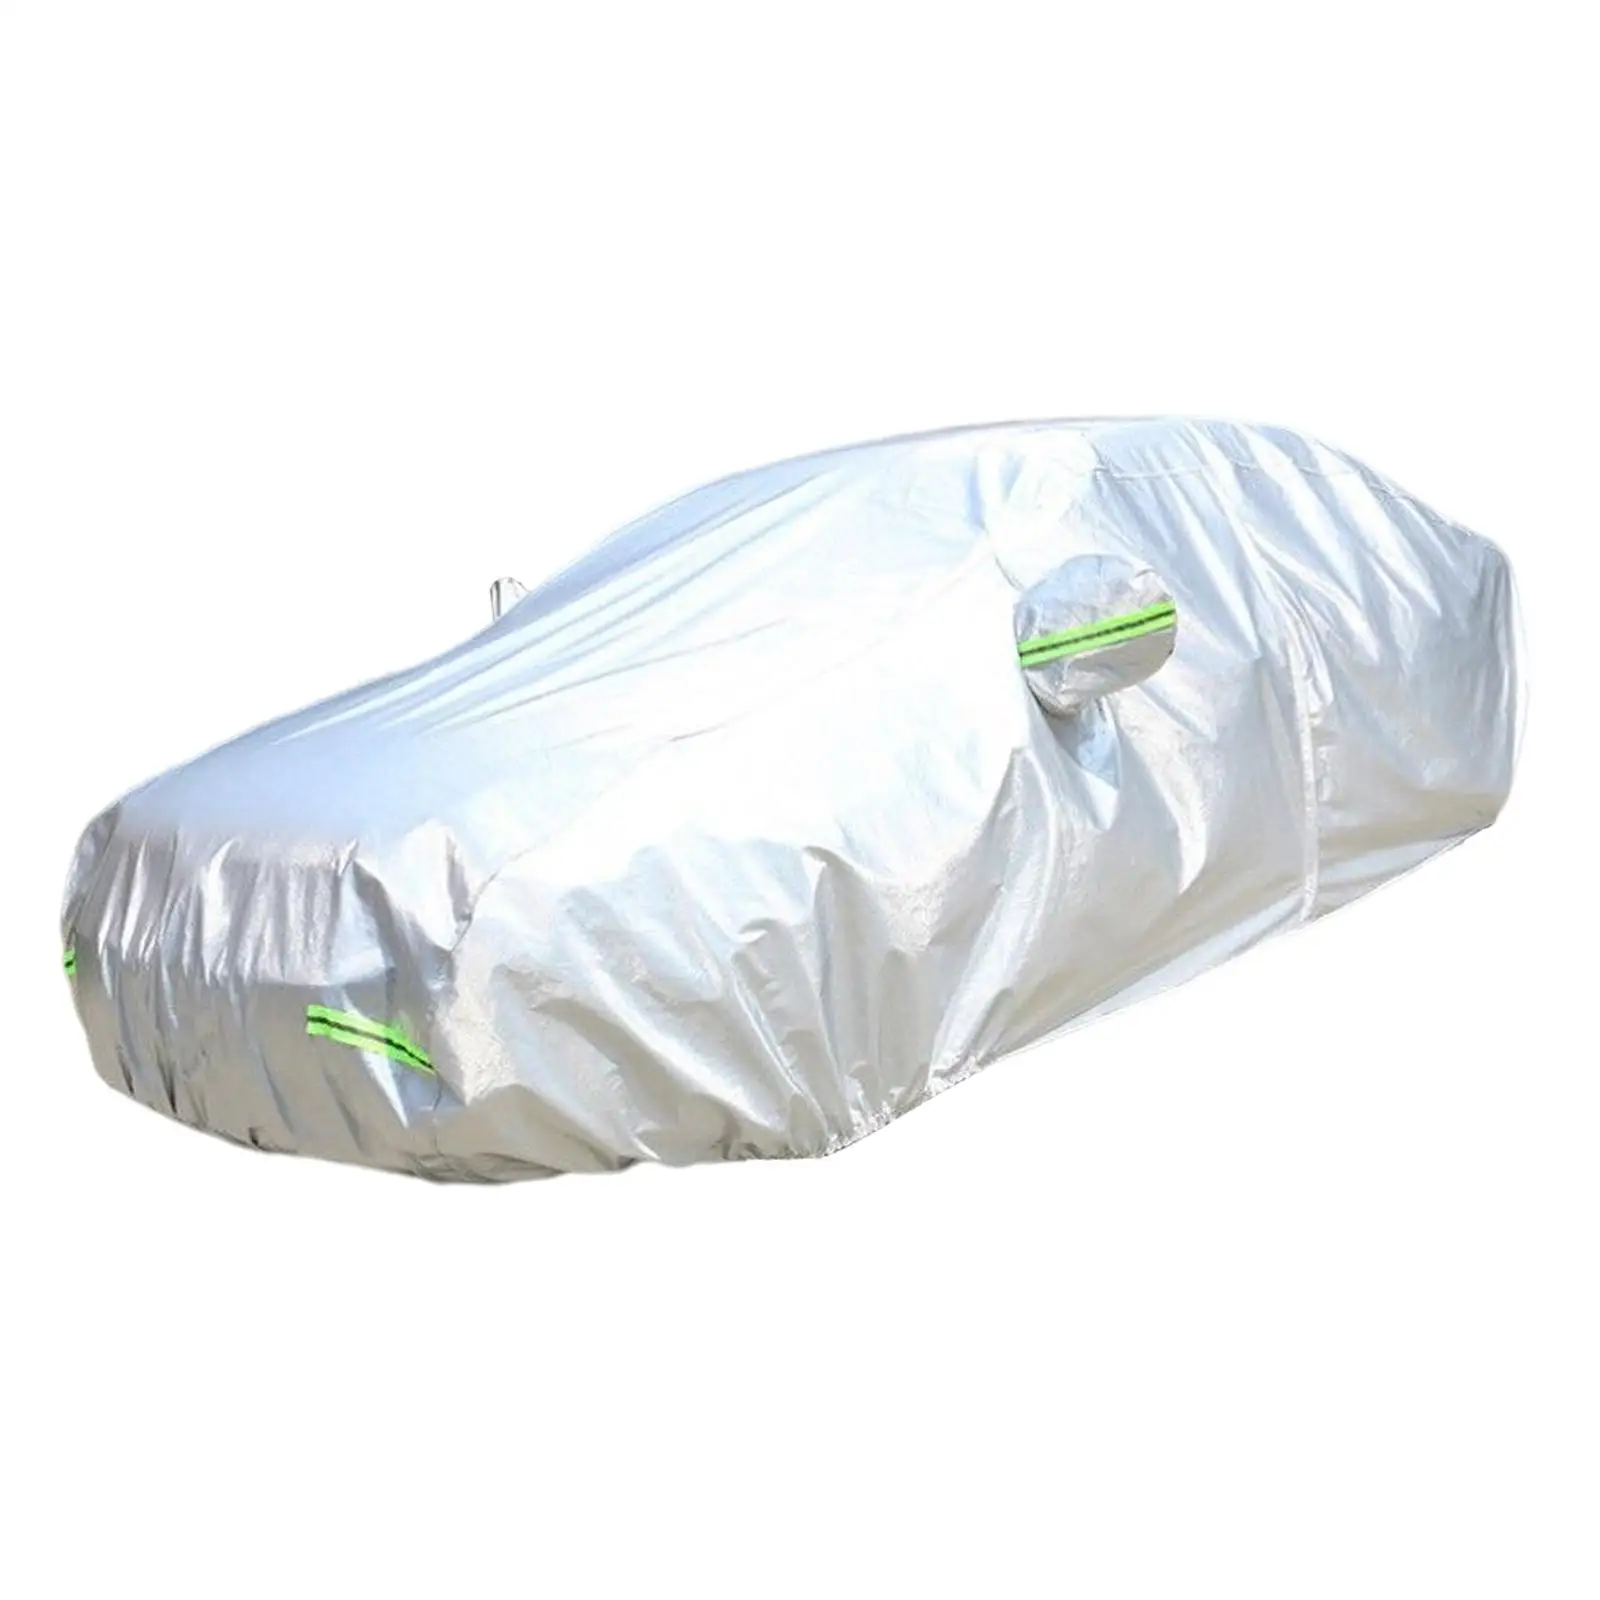 

Утолщенный чехол из ткани Оксфорд для автомобиля, водонепроницаемые внешние аксессуары, наружный защитный чехол для Byd Atto 3 Yuan Plus